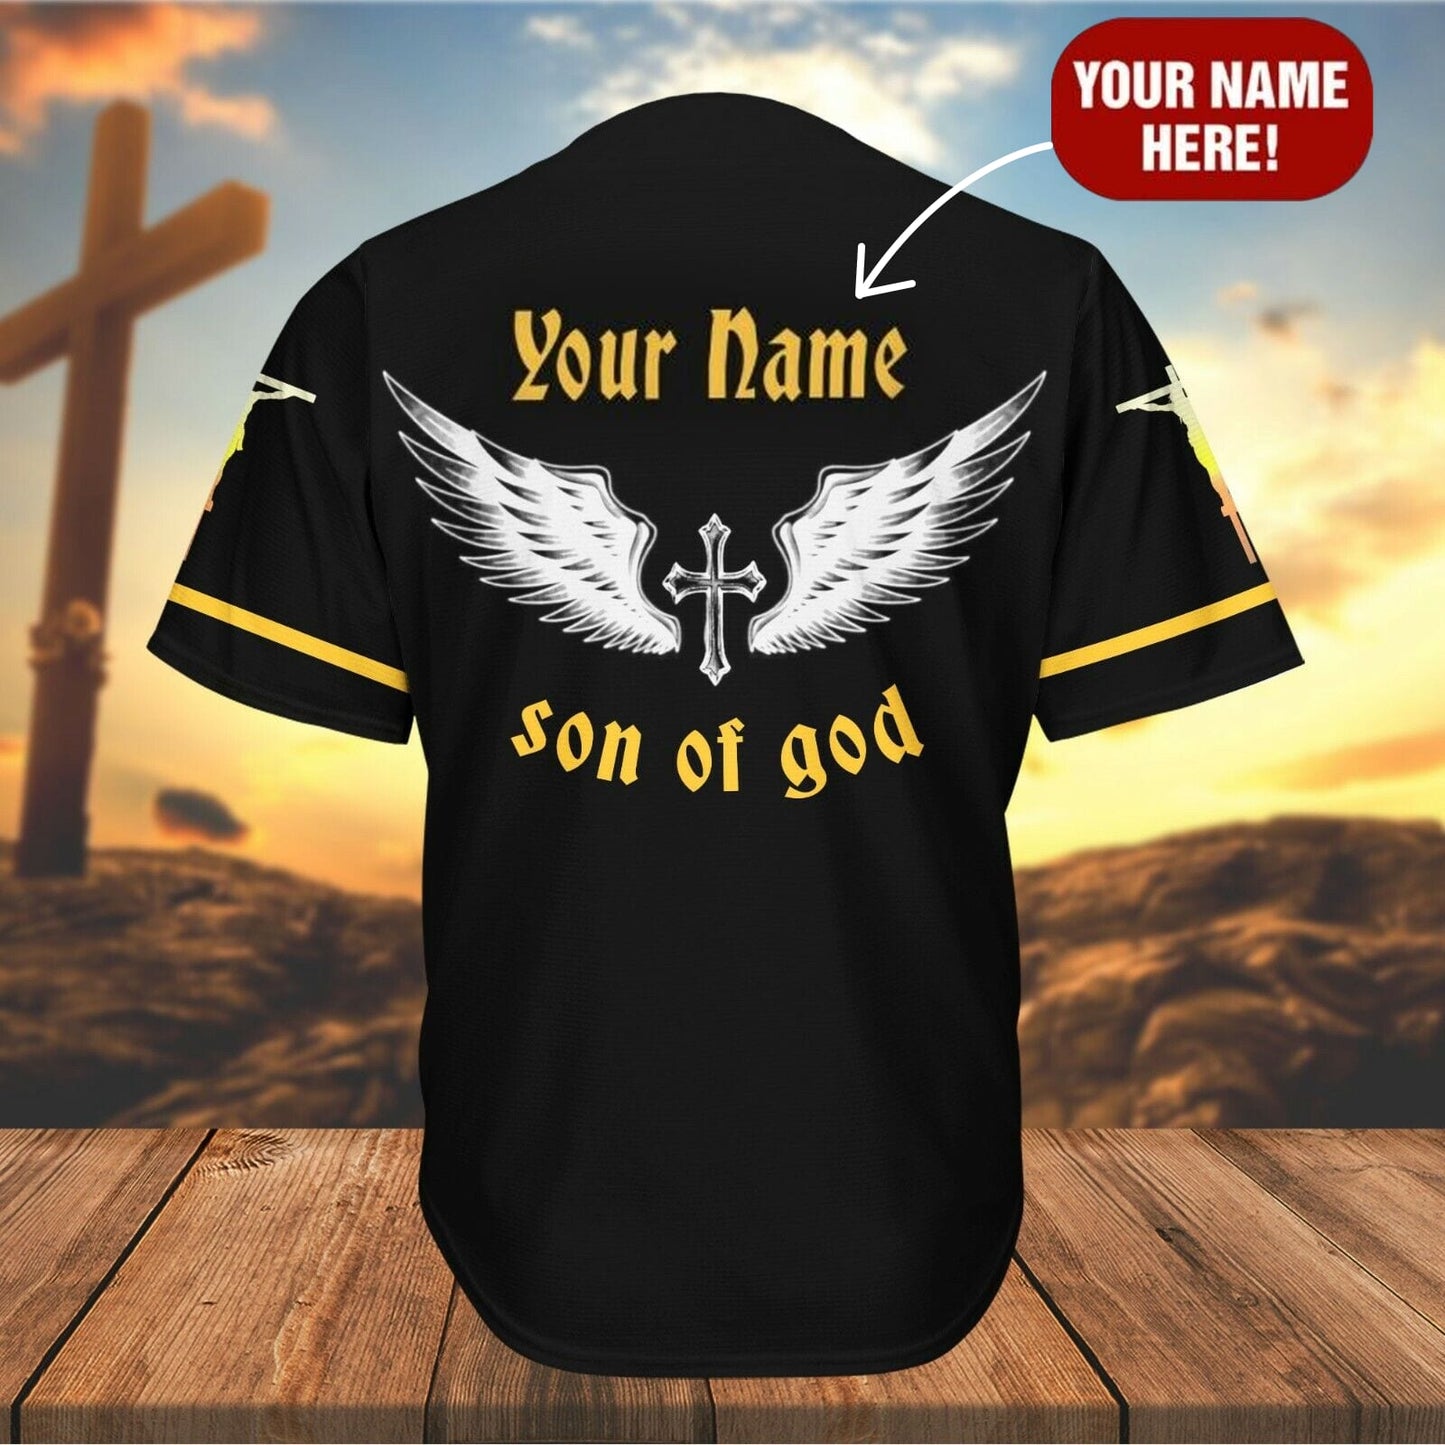 Cross Angel Wings Baseball Jersey - Child Of God Custom Baseball Jersey Shirt For Men Women